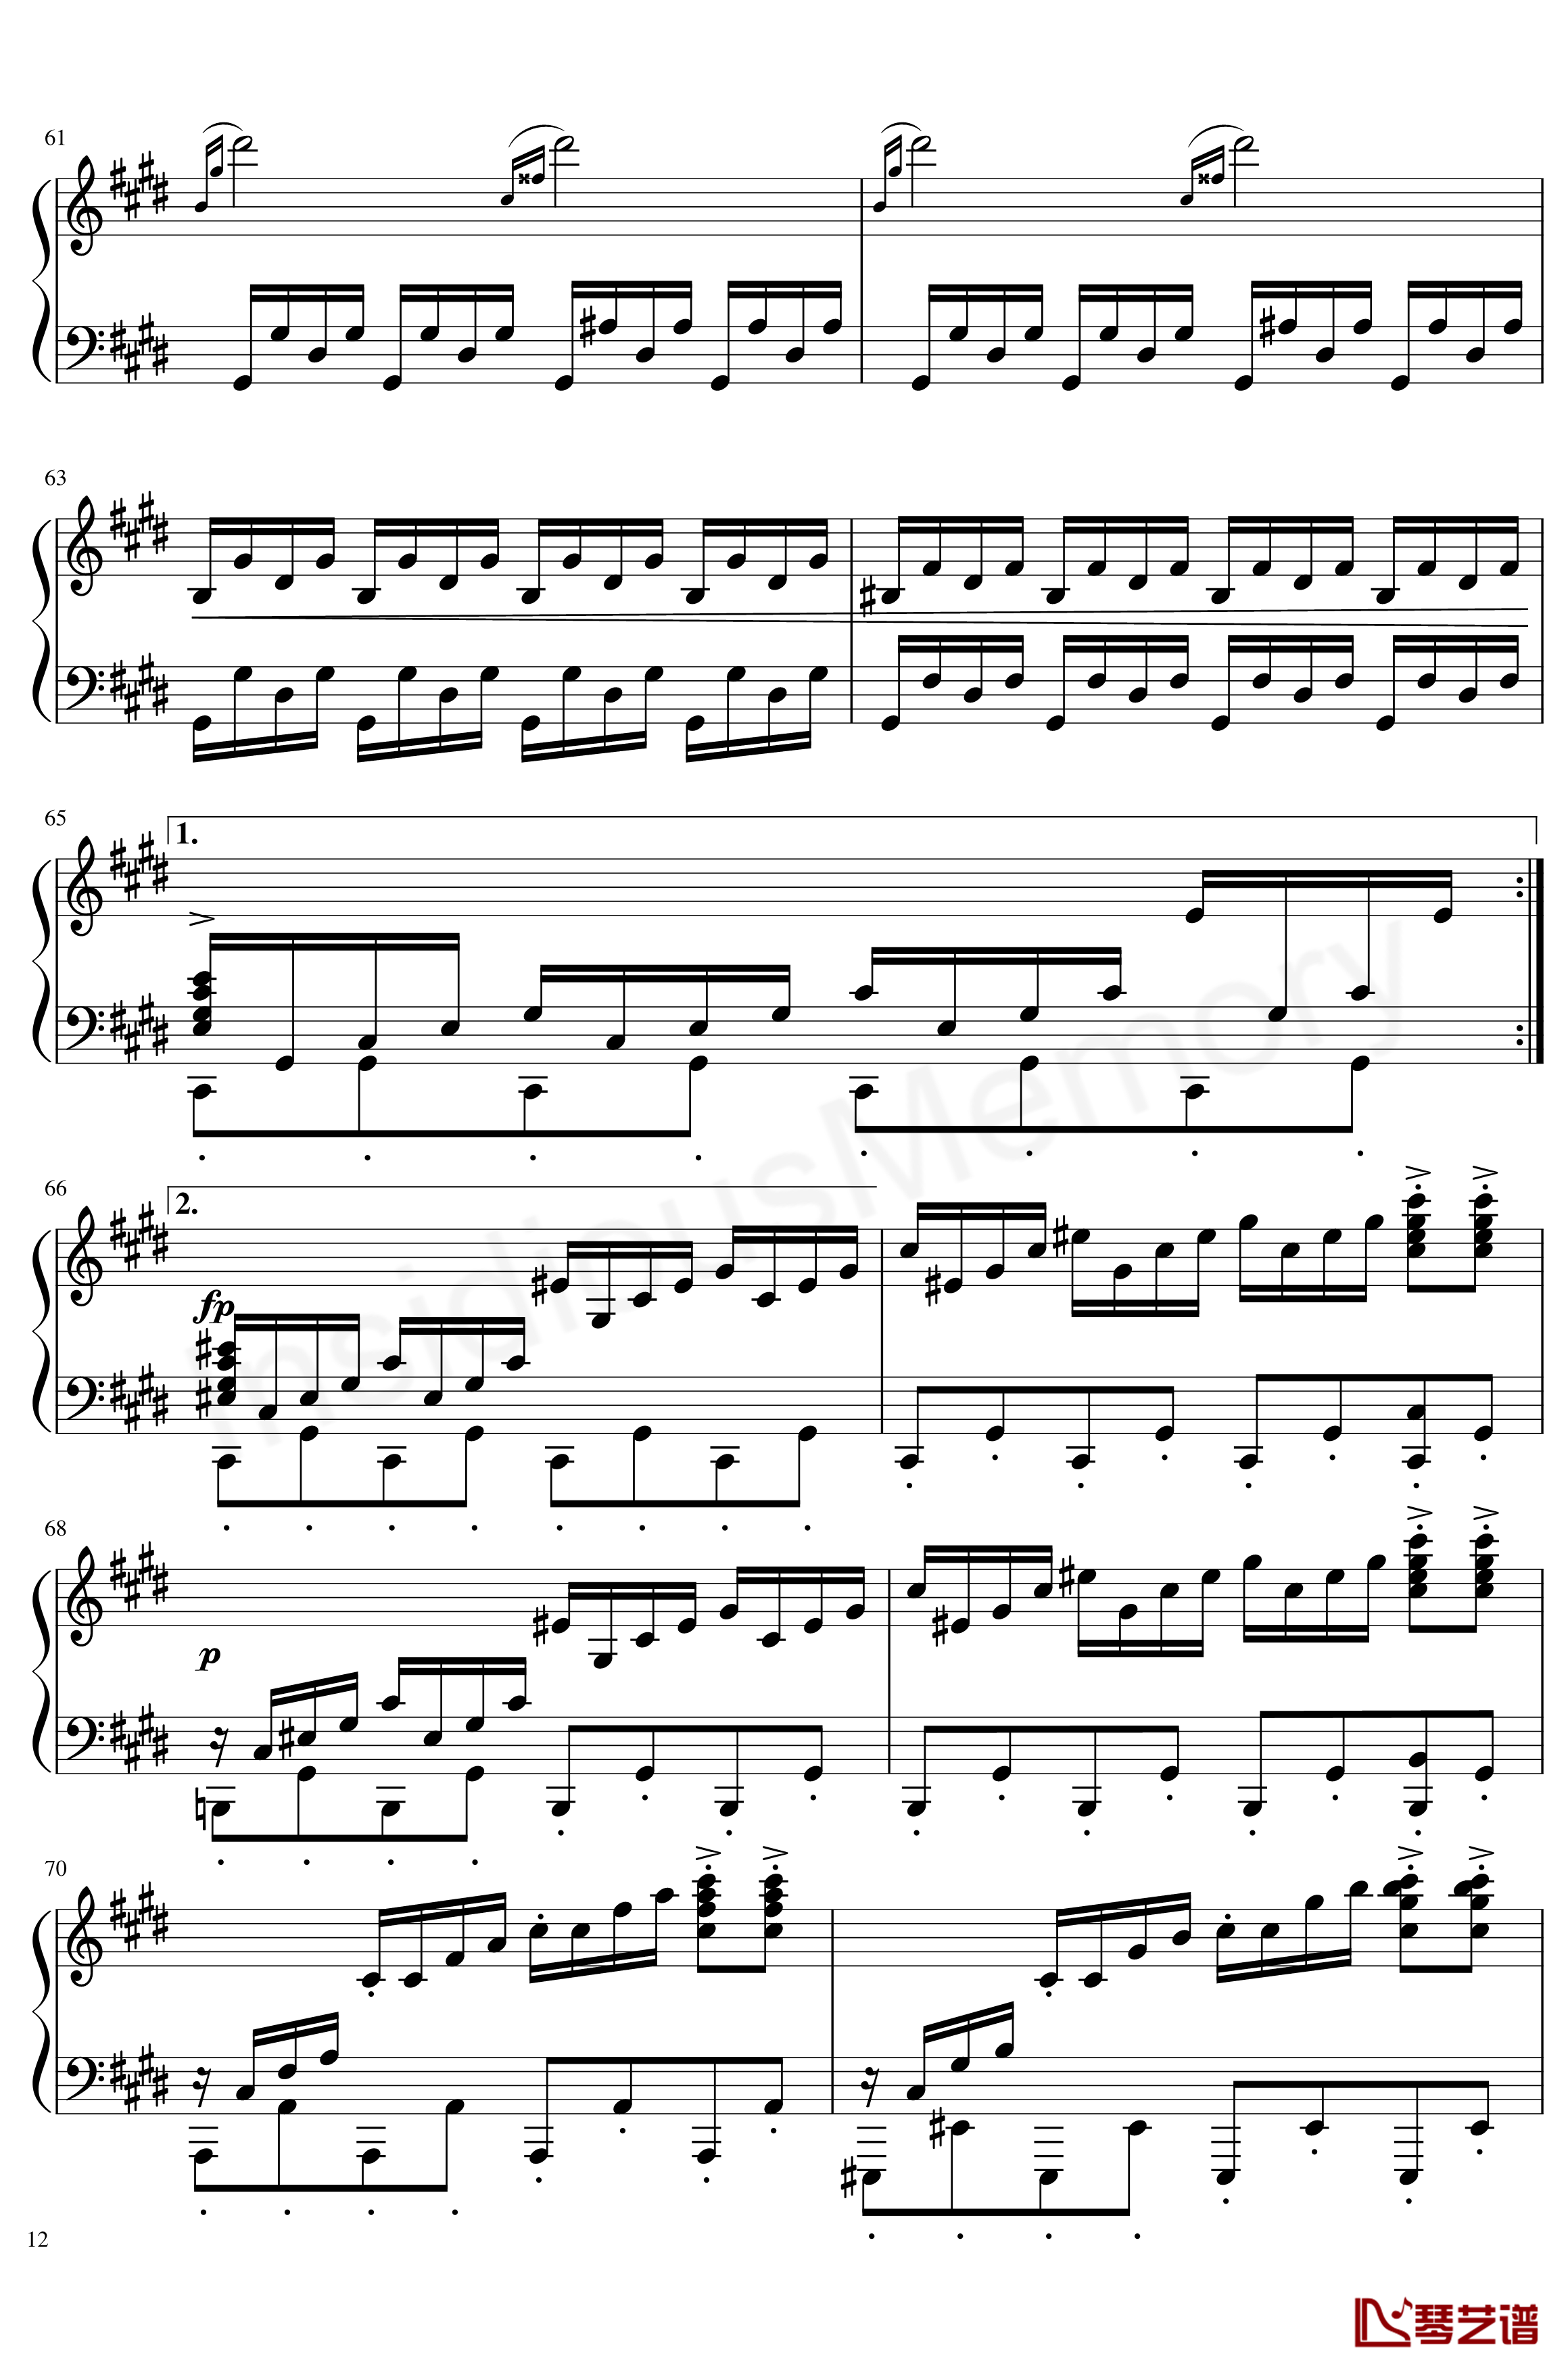 月光奏鸣曲钢琴谱-贝多芬-beethoven12